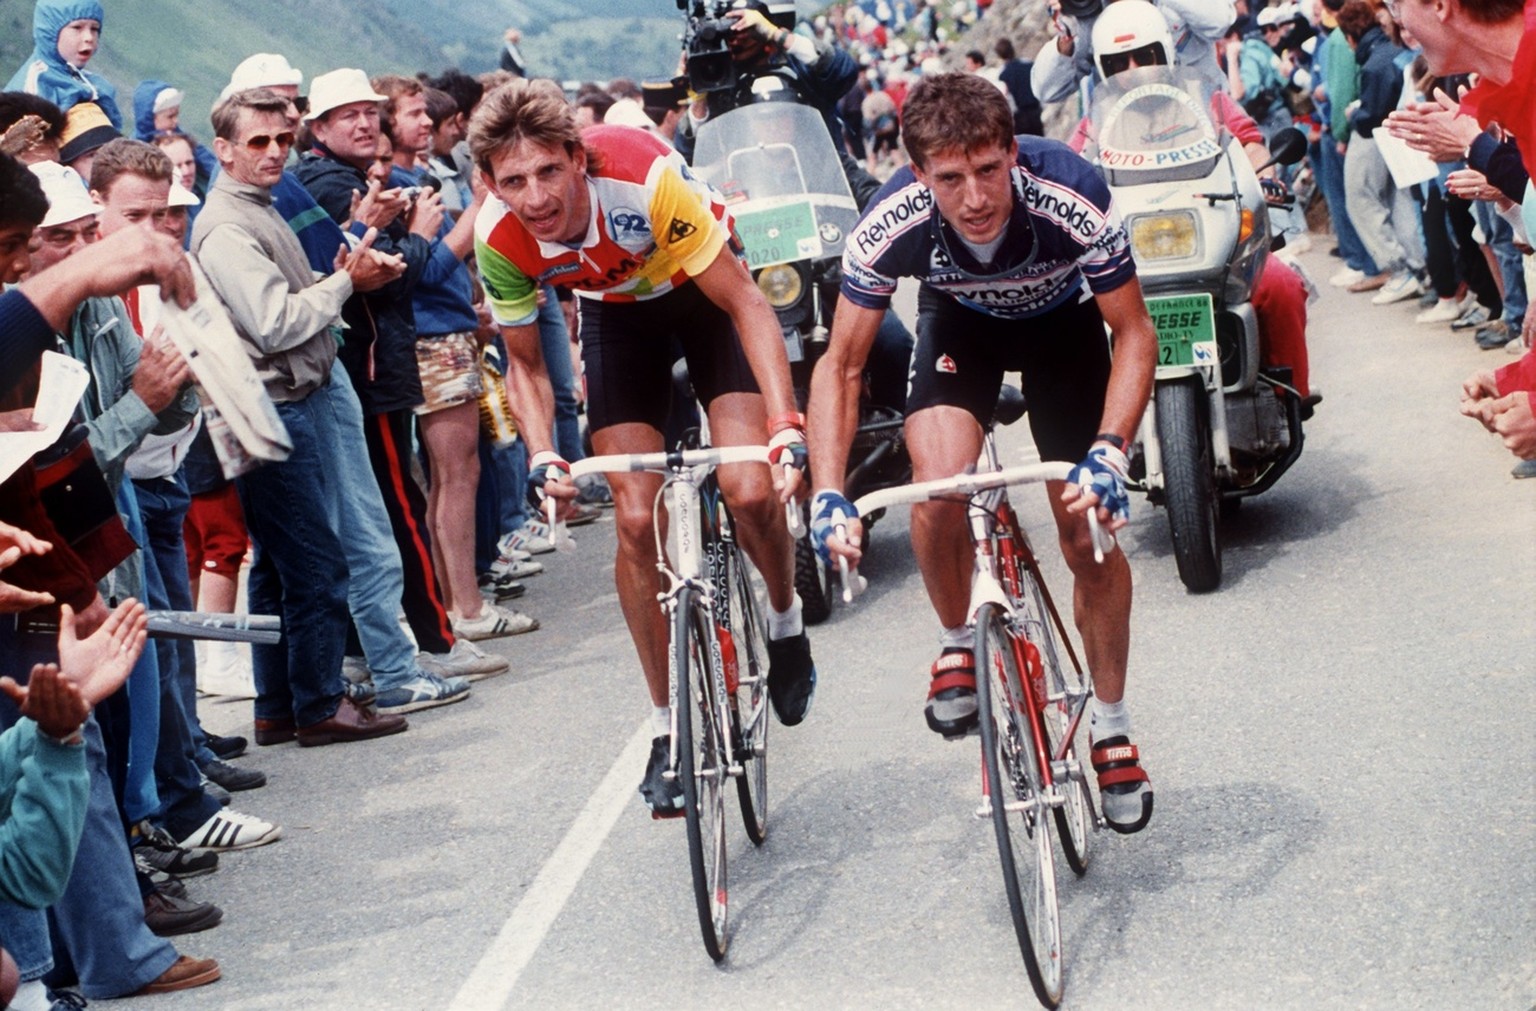 Zuschauer verfolgen, dichtgedraengt am Strassenrand stehend, das Duell des Niederlaenders Steven Rooks, links, mit dem Spanier Pedro Delgado, rechts, auf der 12. Tour de France-Etappe am 14. Juli 1988 ...